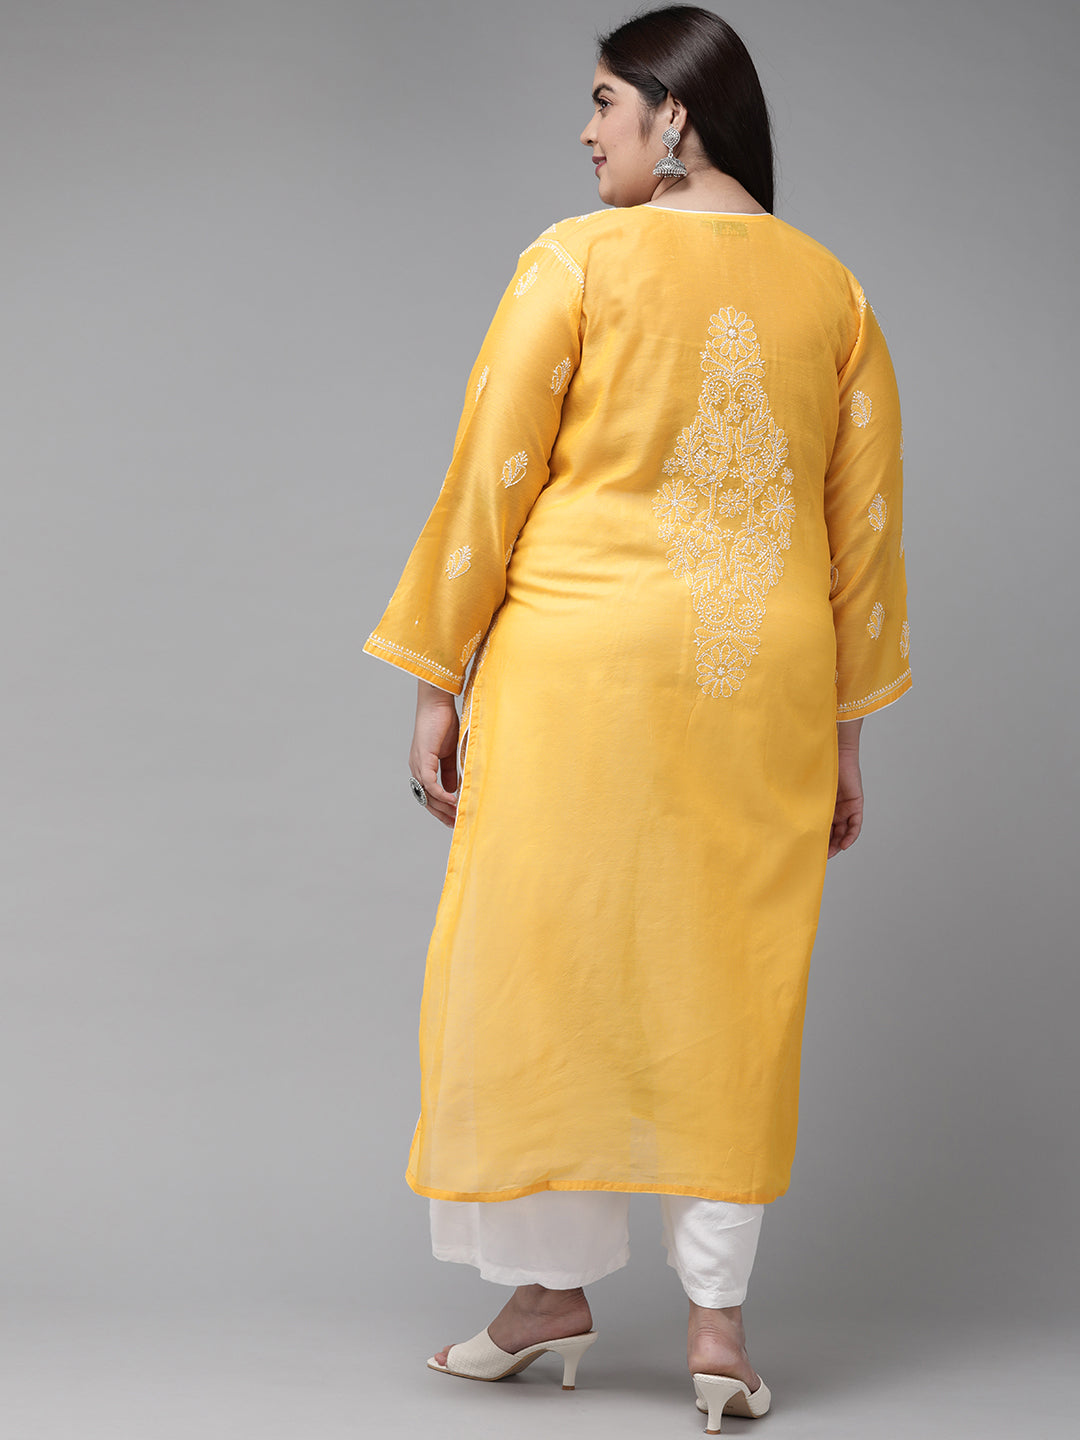 Mango Yellow & White Embroidered Chikankari Chanderi Kurta